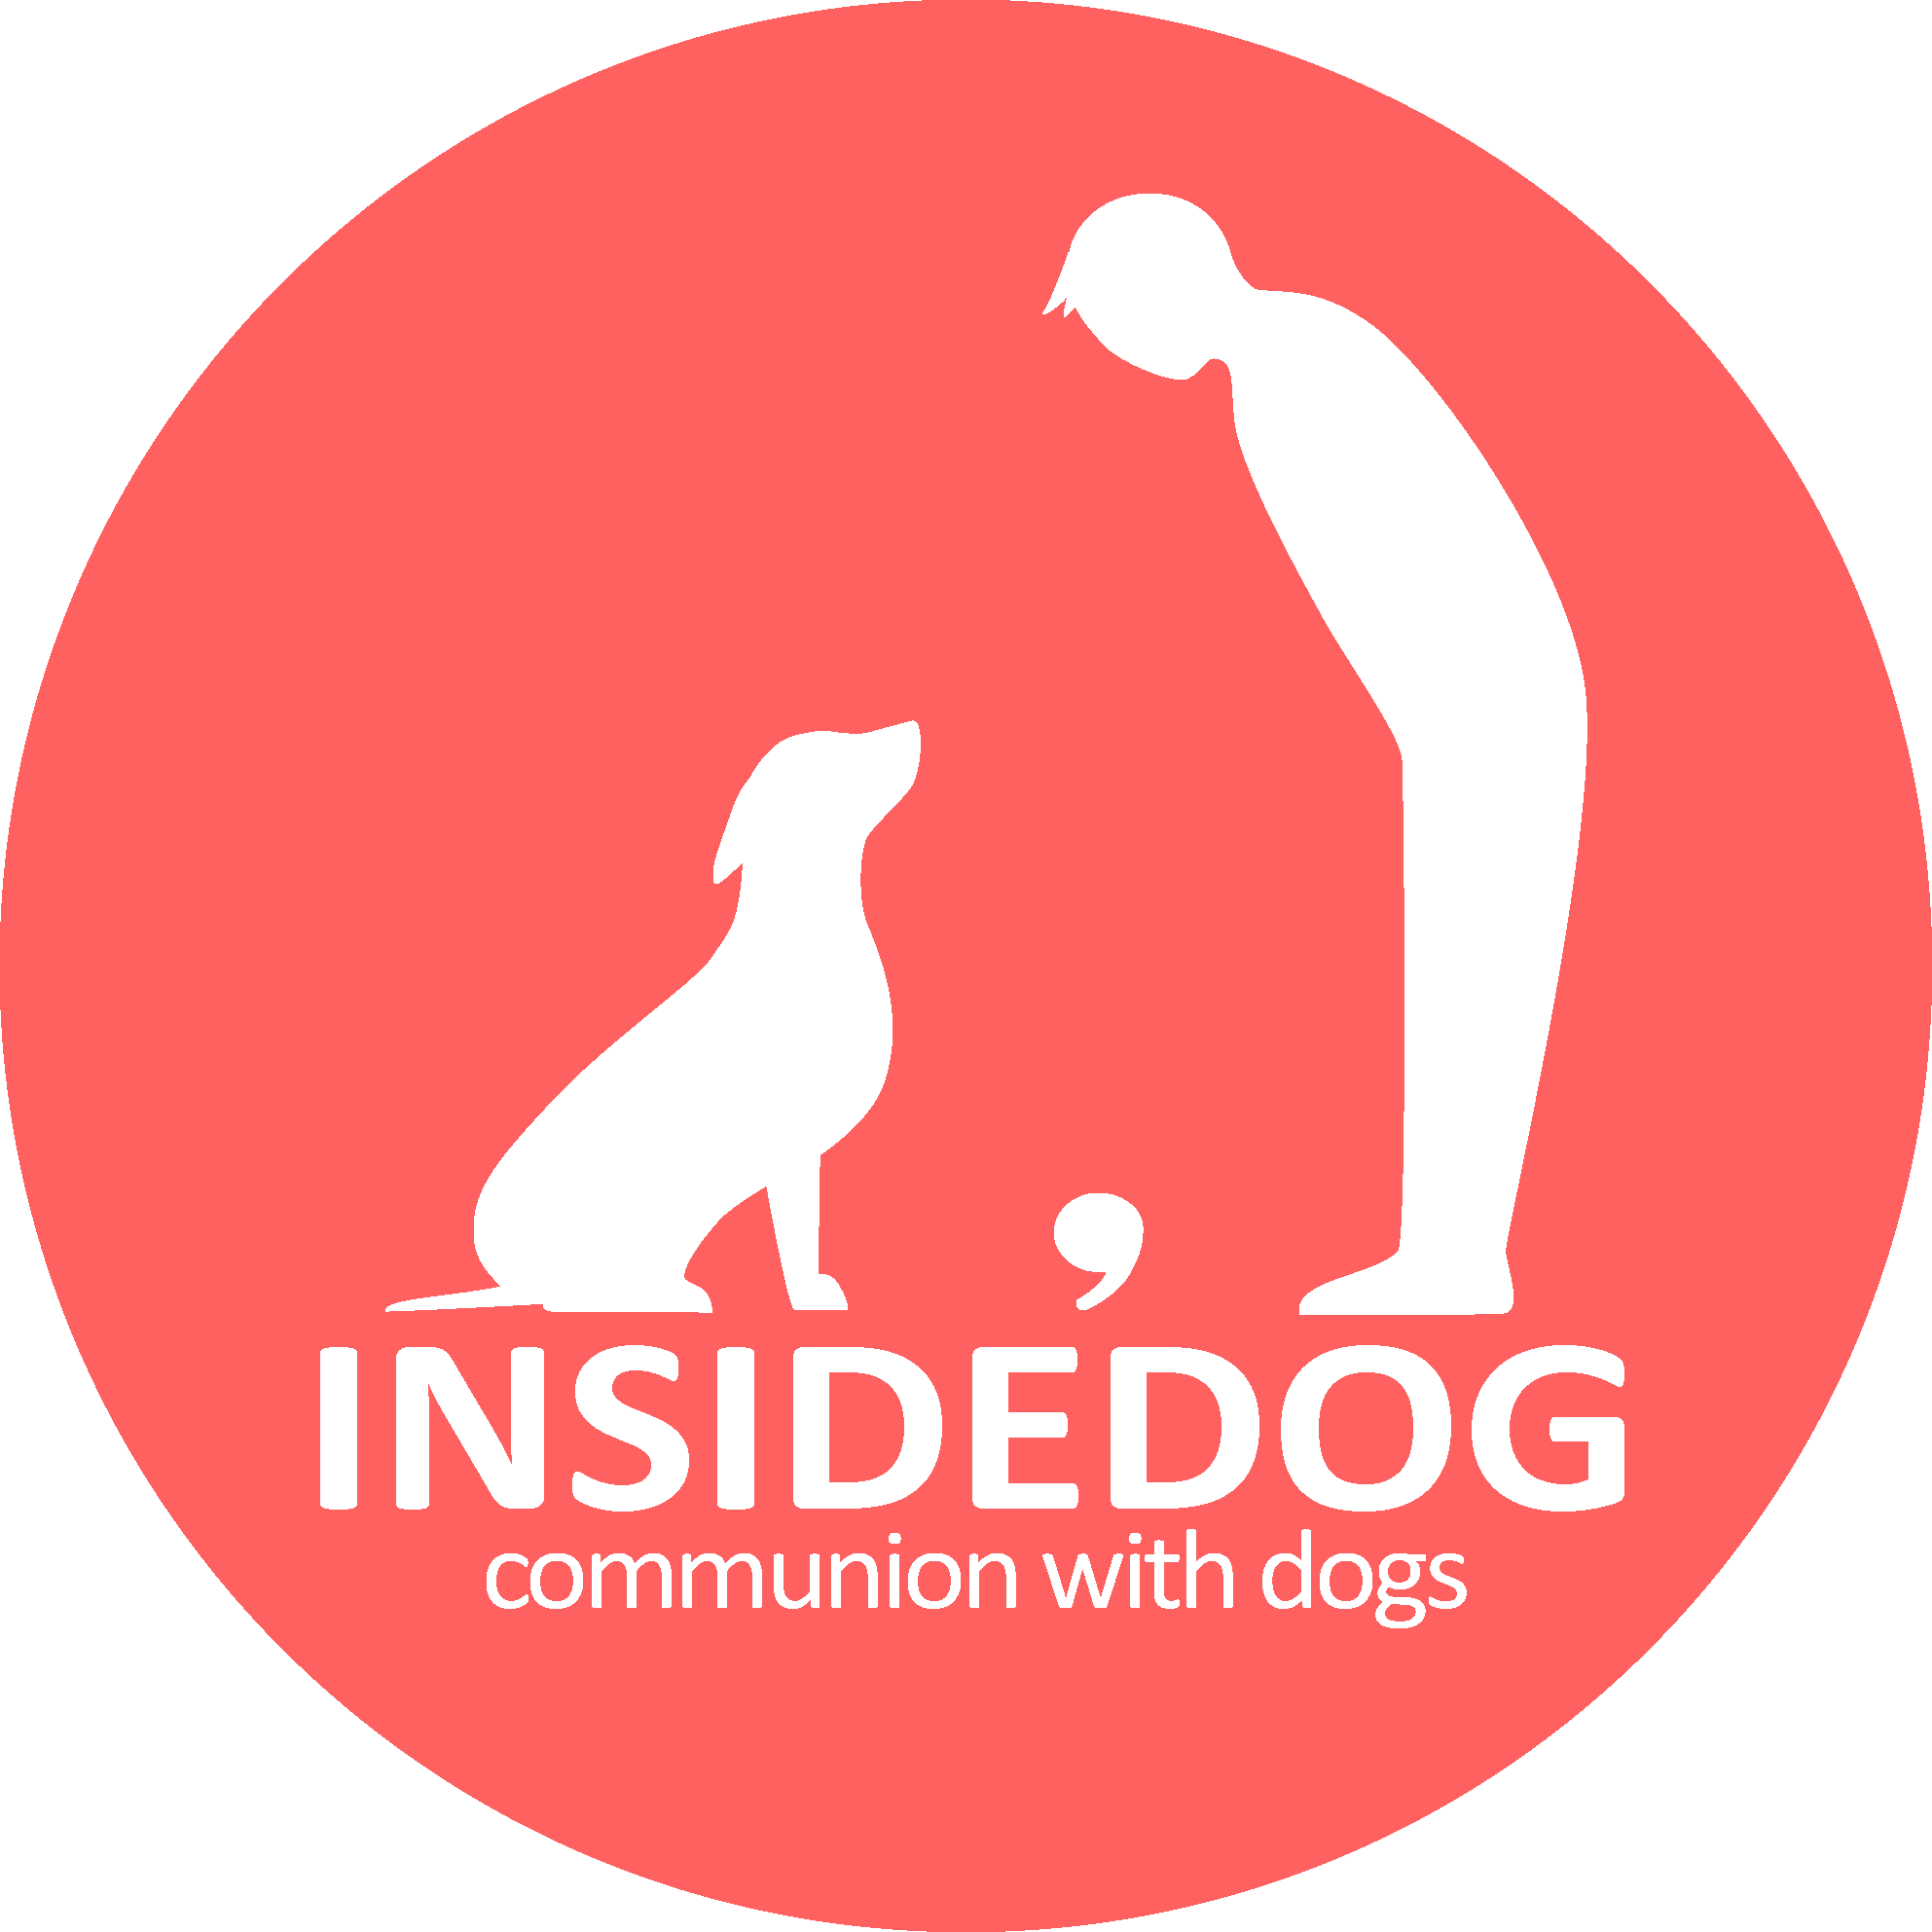 insidedog logo image